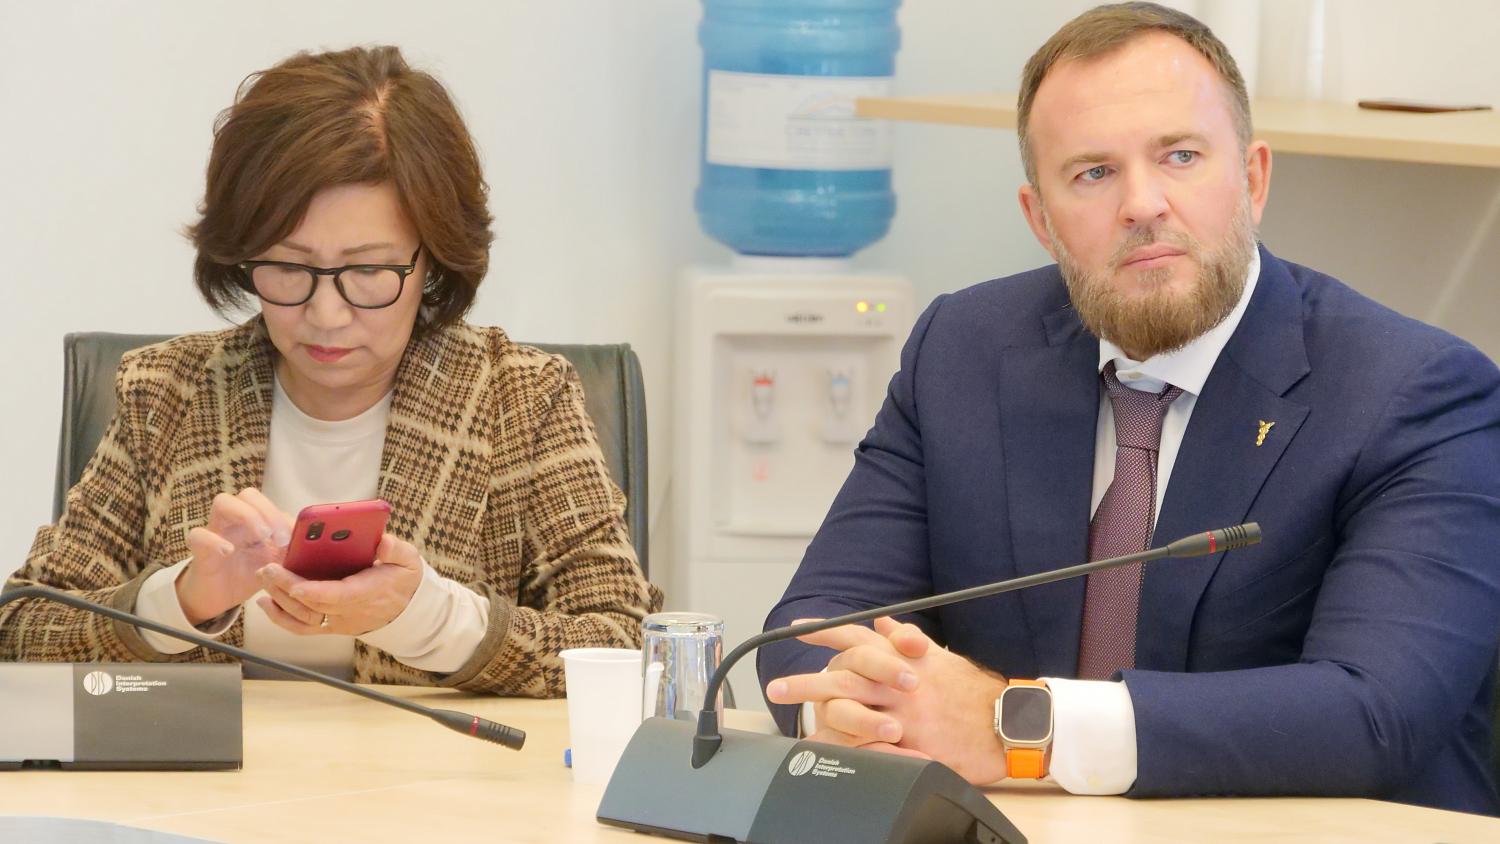 ТПП Москвы и Якутии укрепляют сотрудничество в интересах всего делового сообщества